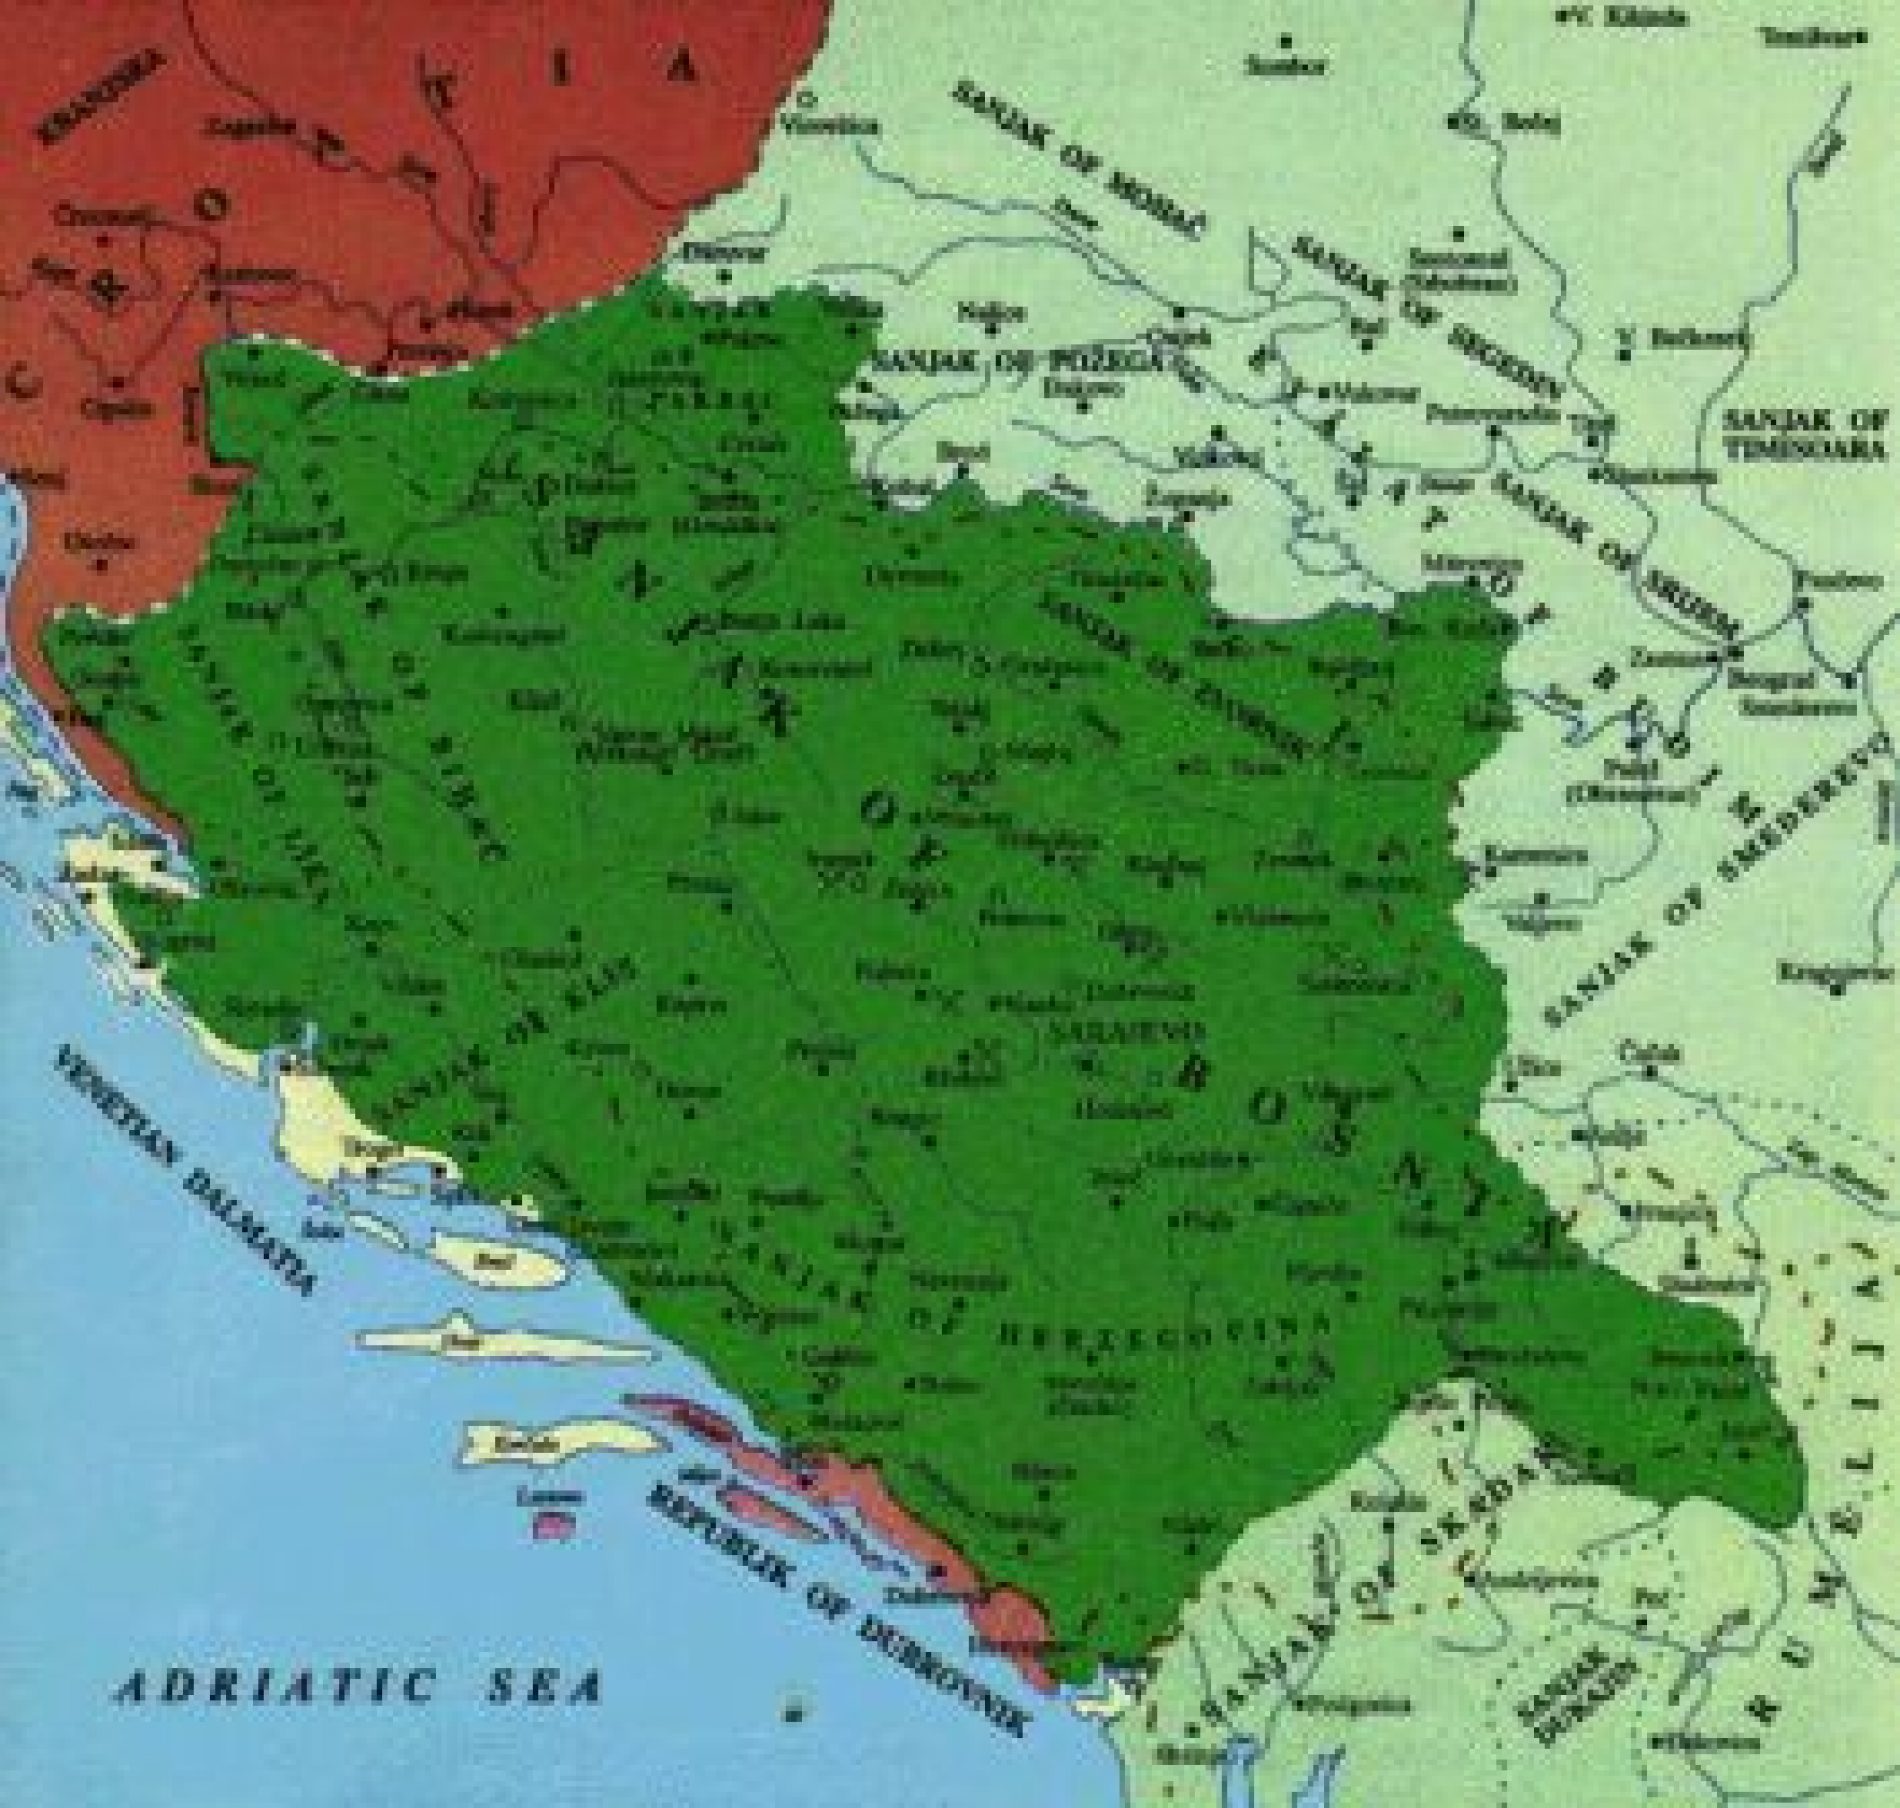 Bosna – jedina cjelovita od svih južnoslavenskih teritorija u Osmanskom carstvu